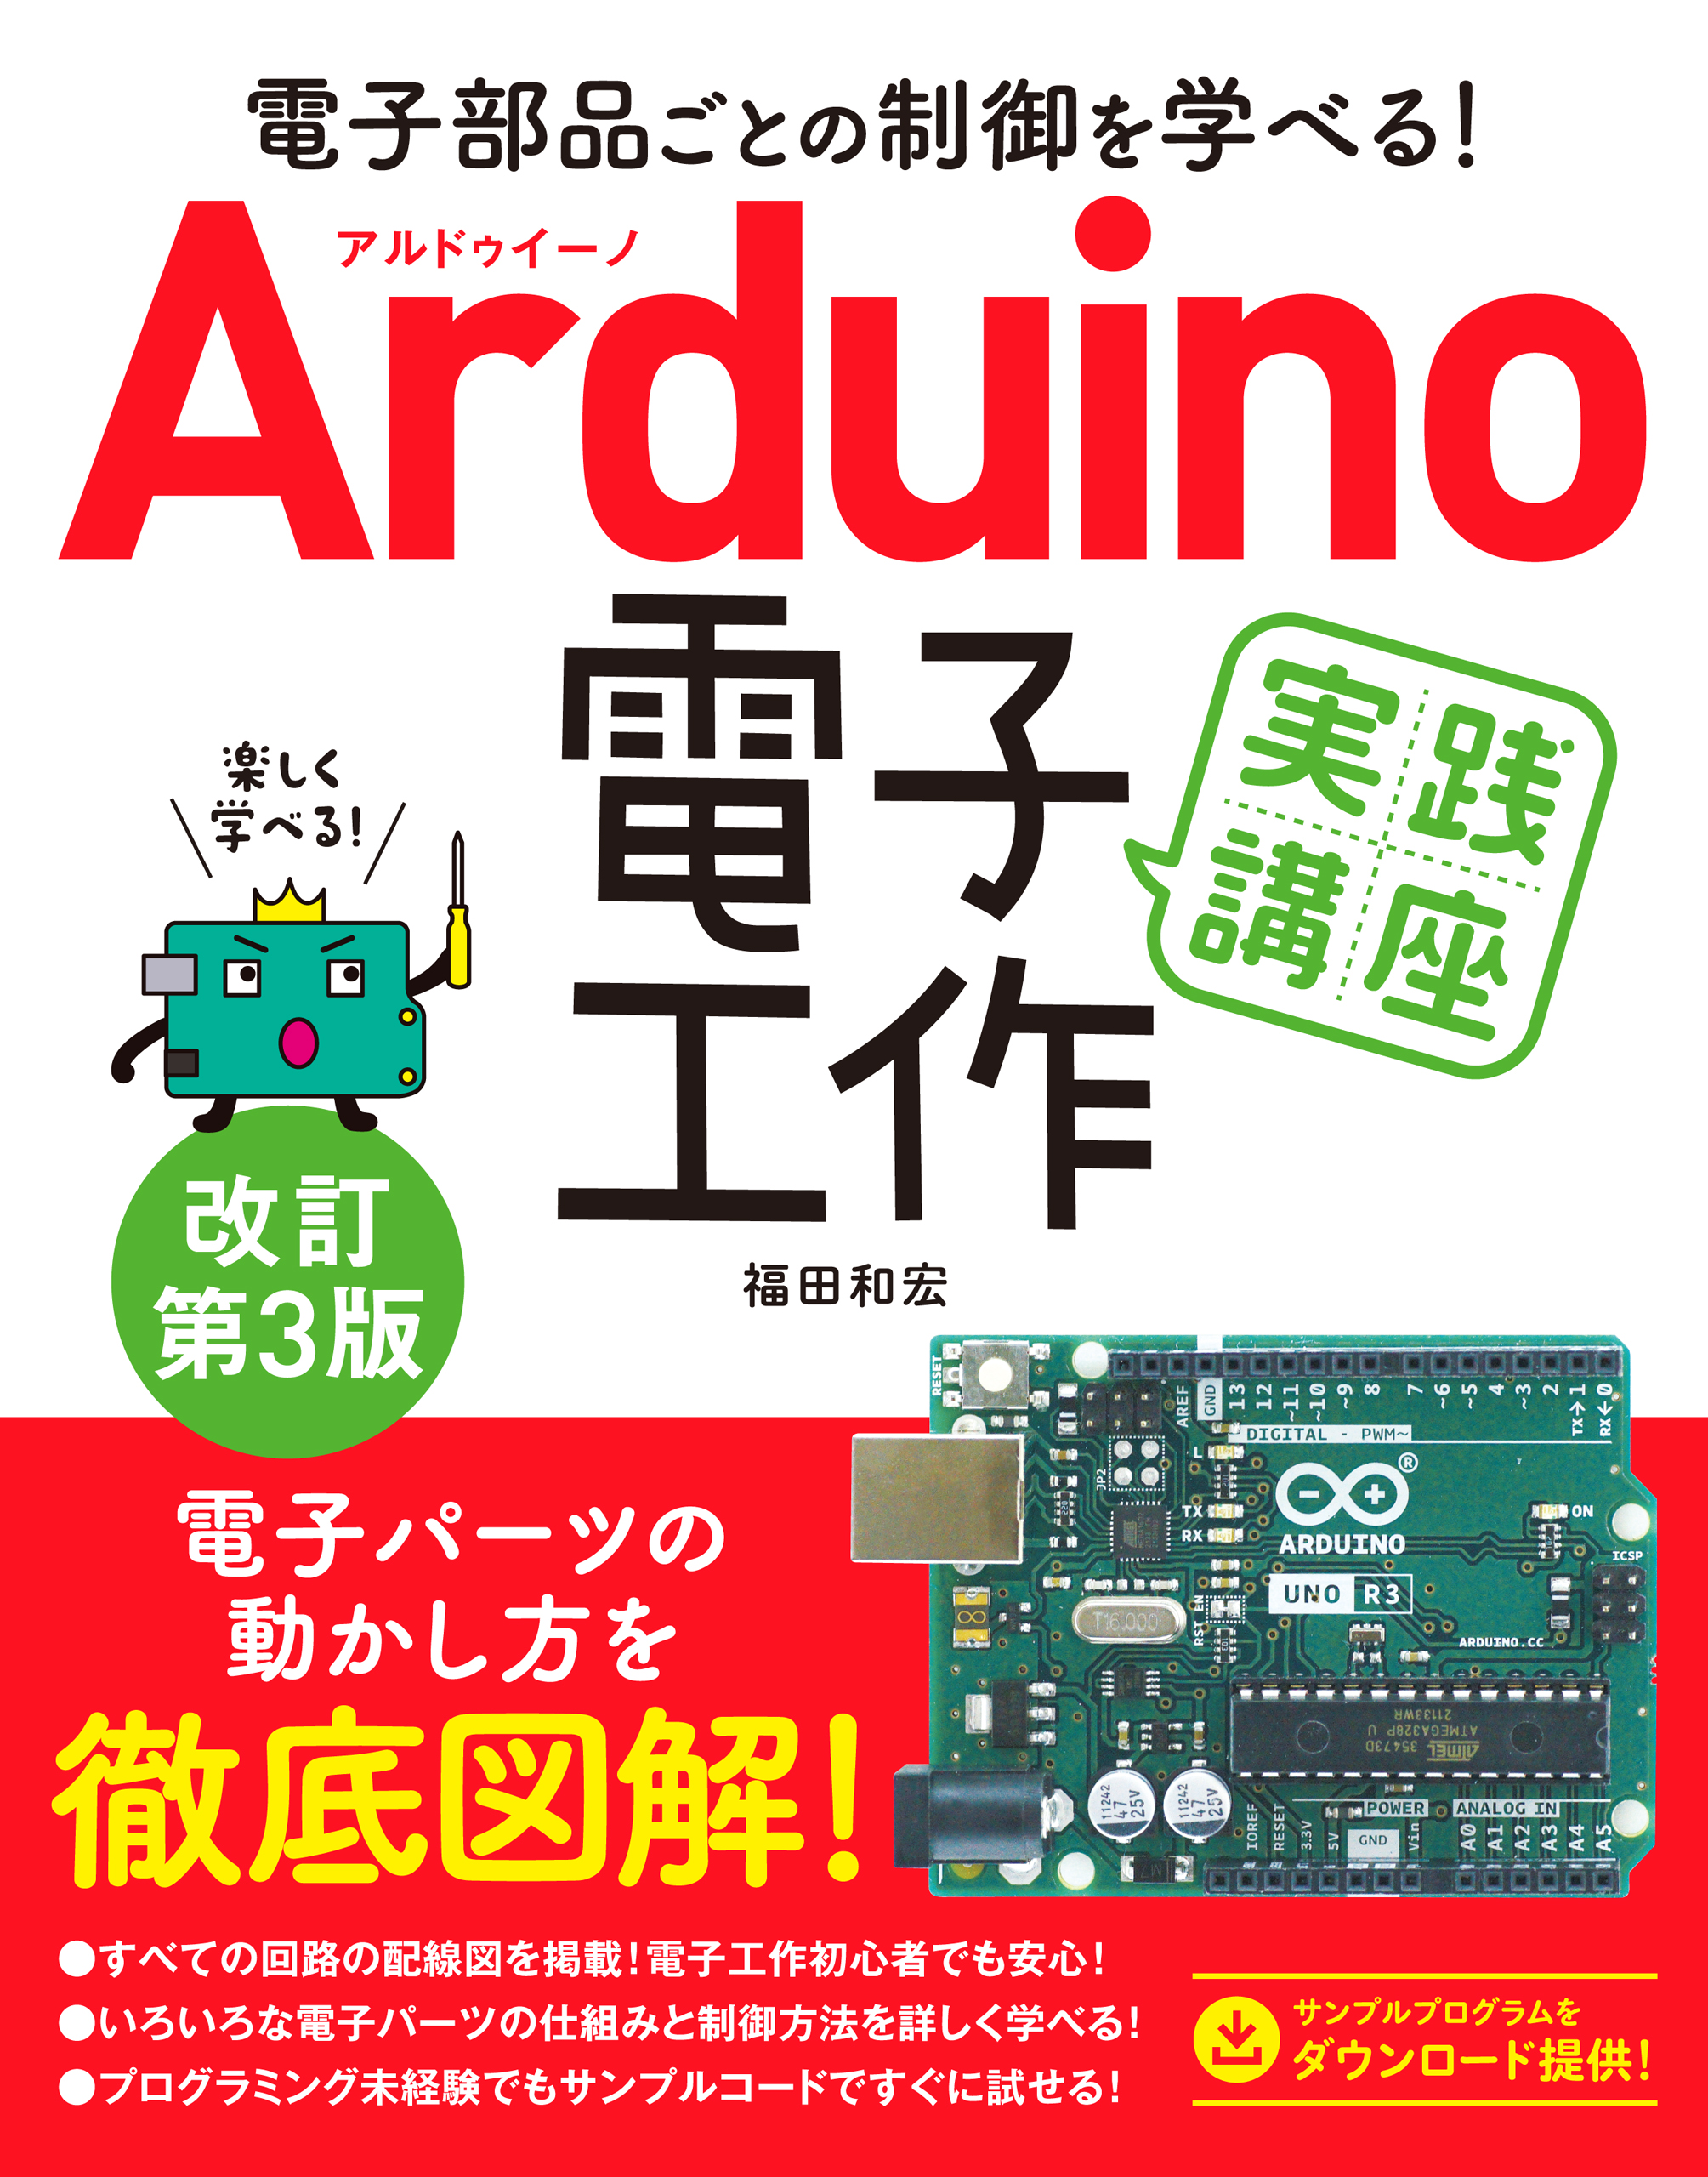 アルドゥイノ Arduino をはじめよう第3版対応 電子工作 プログラミング スターターキット PDF教本ダウンロード特典付き アルデュイーノ UNO R3 初心者の方のための学習キット 知育玩具 STEM教育 大量注文可